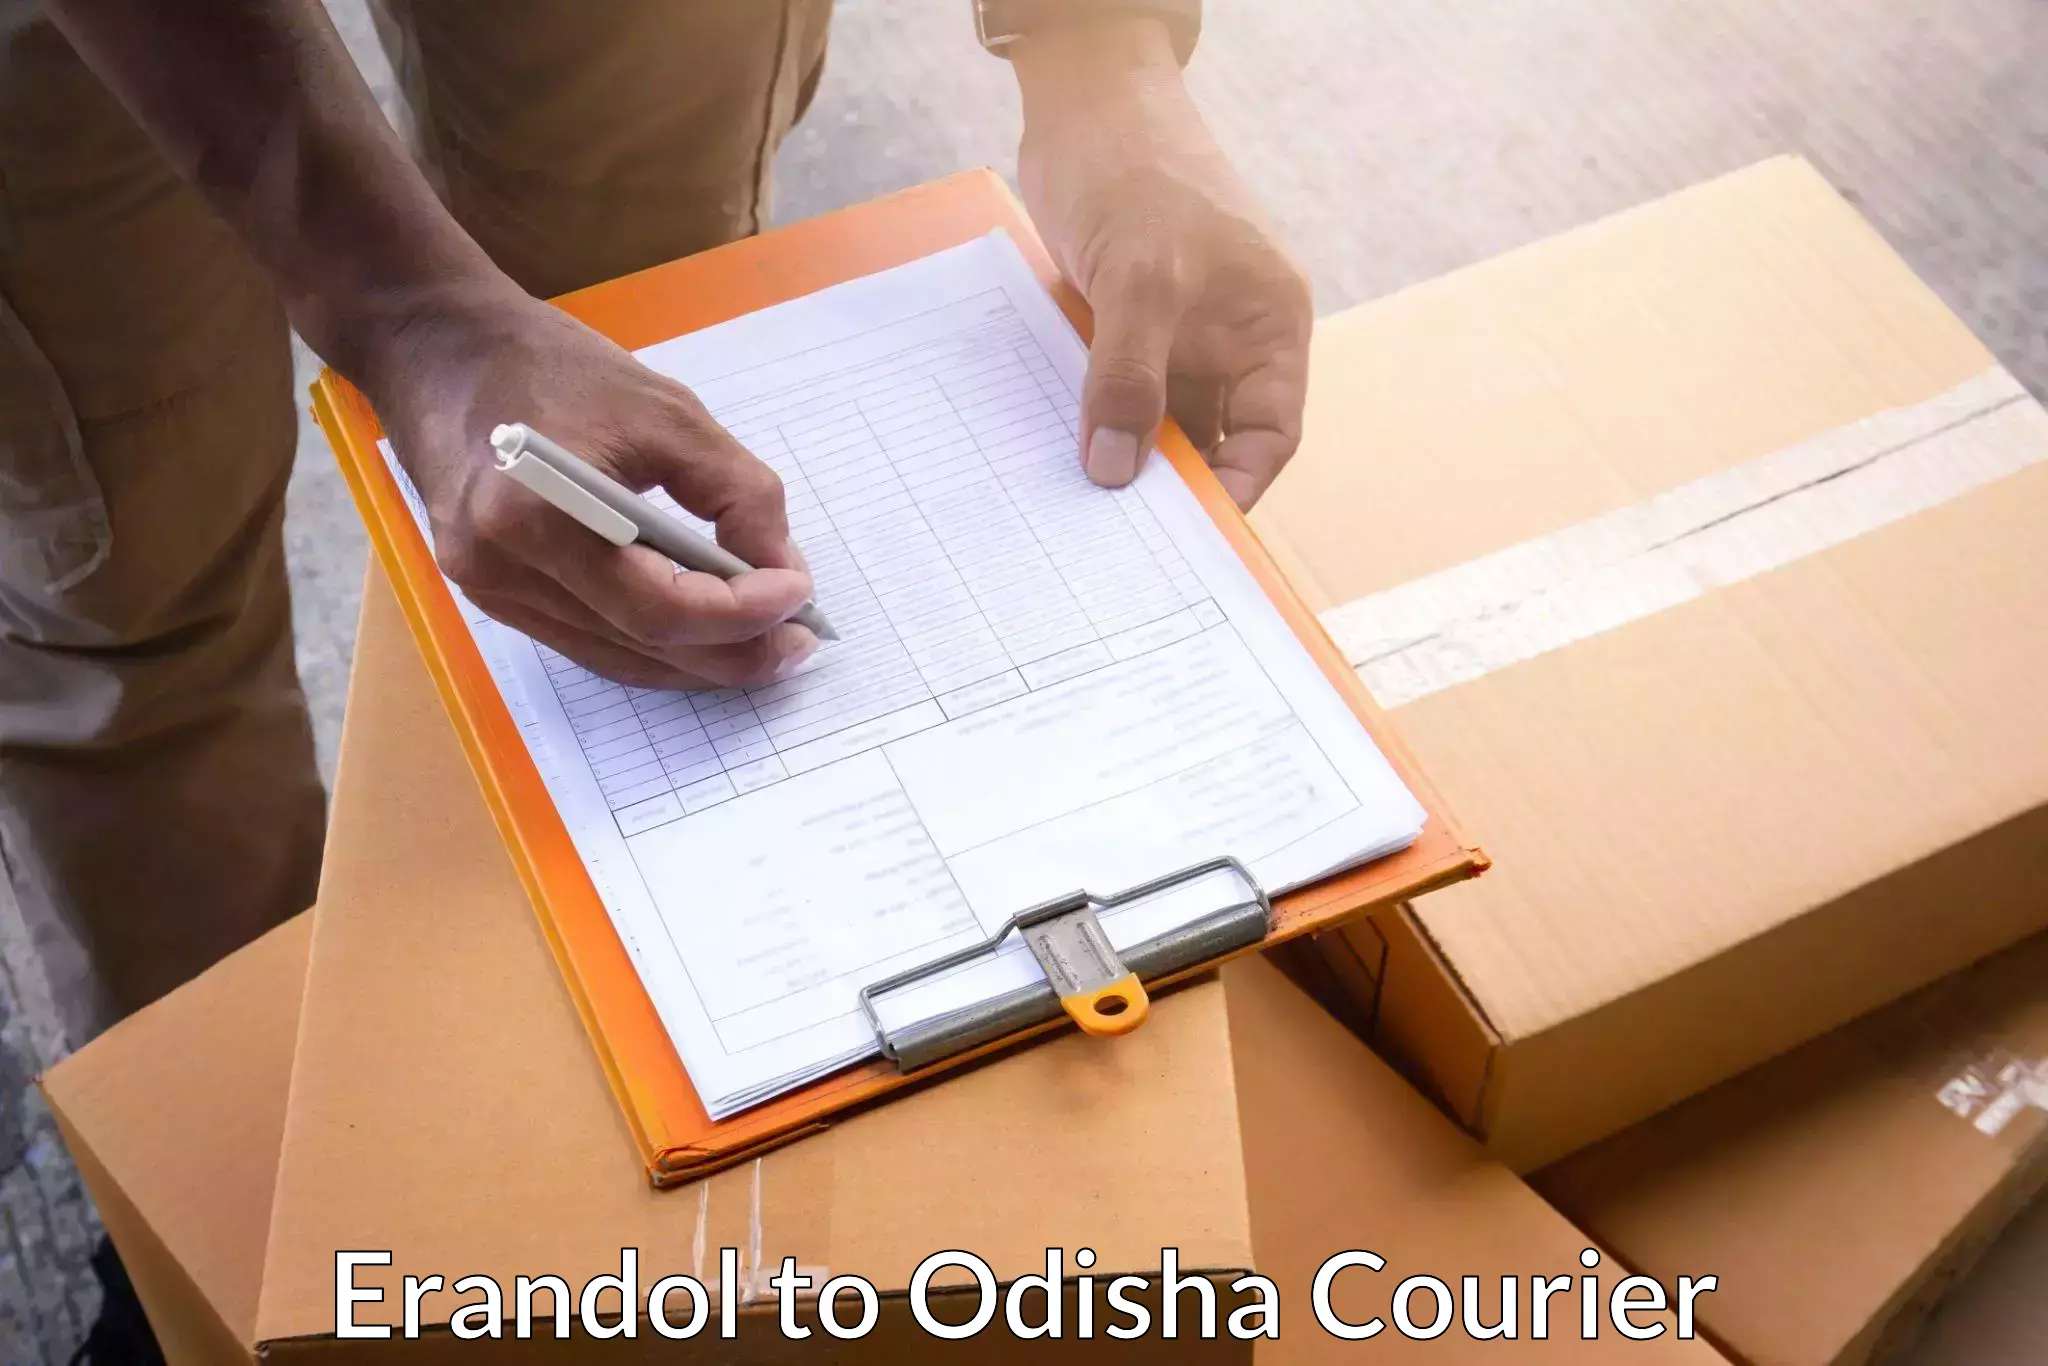 Doorstep delivery service Erandol to Udala